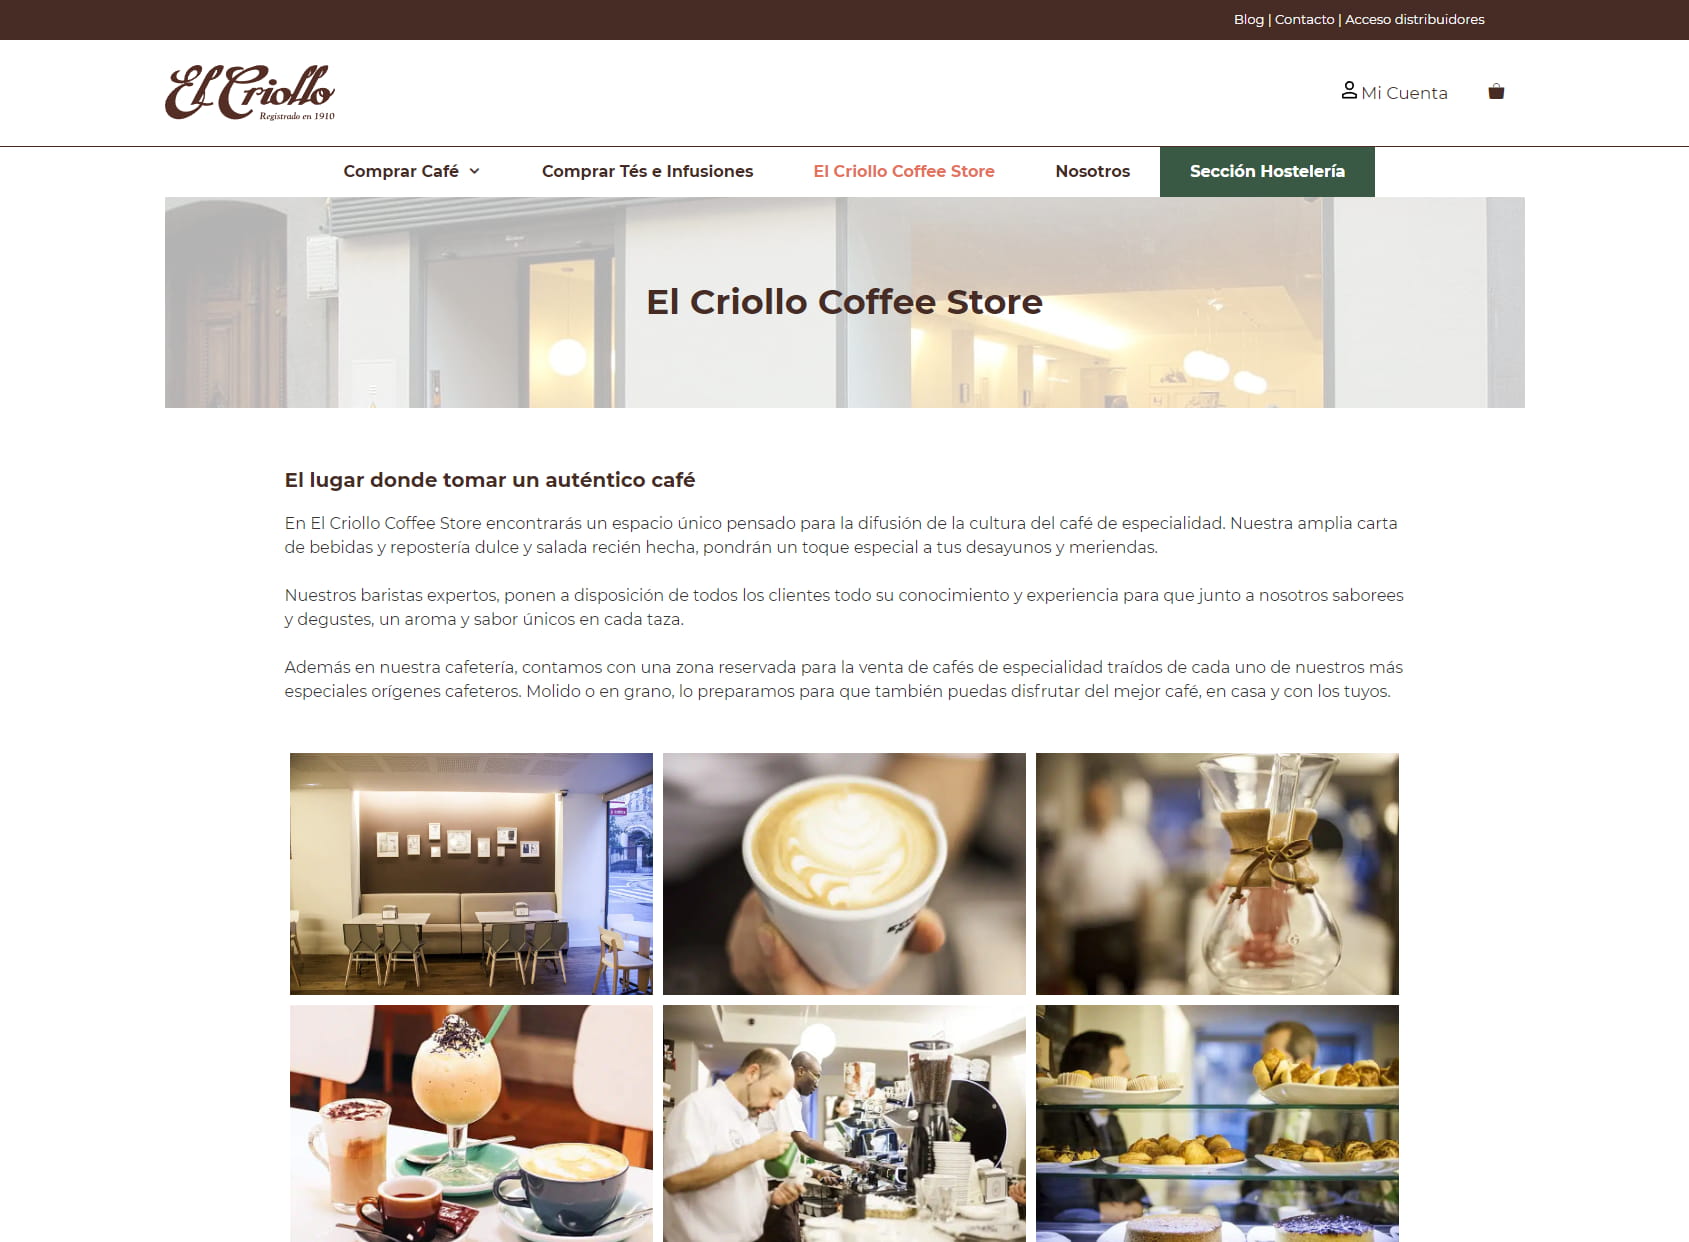 Criollo Coffee Store